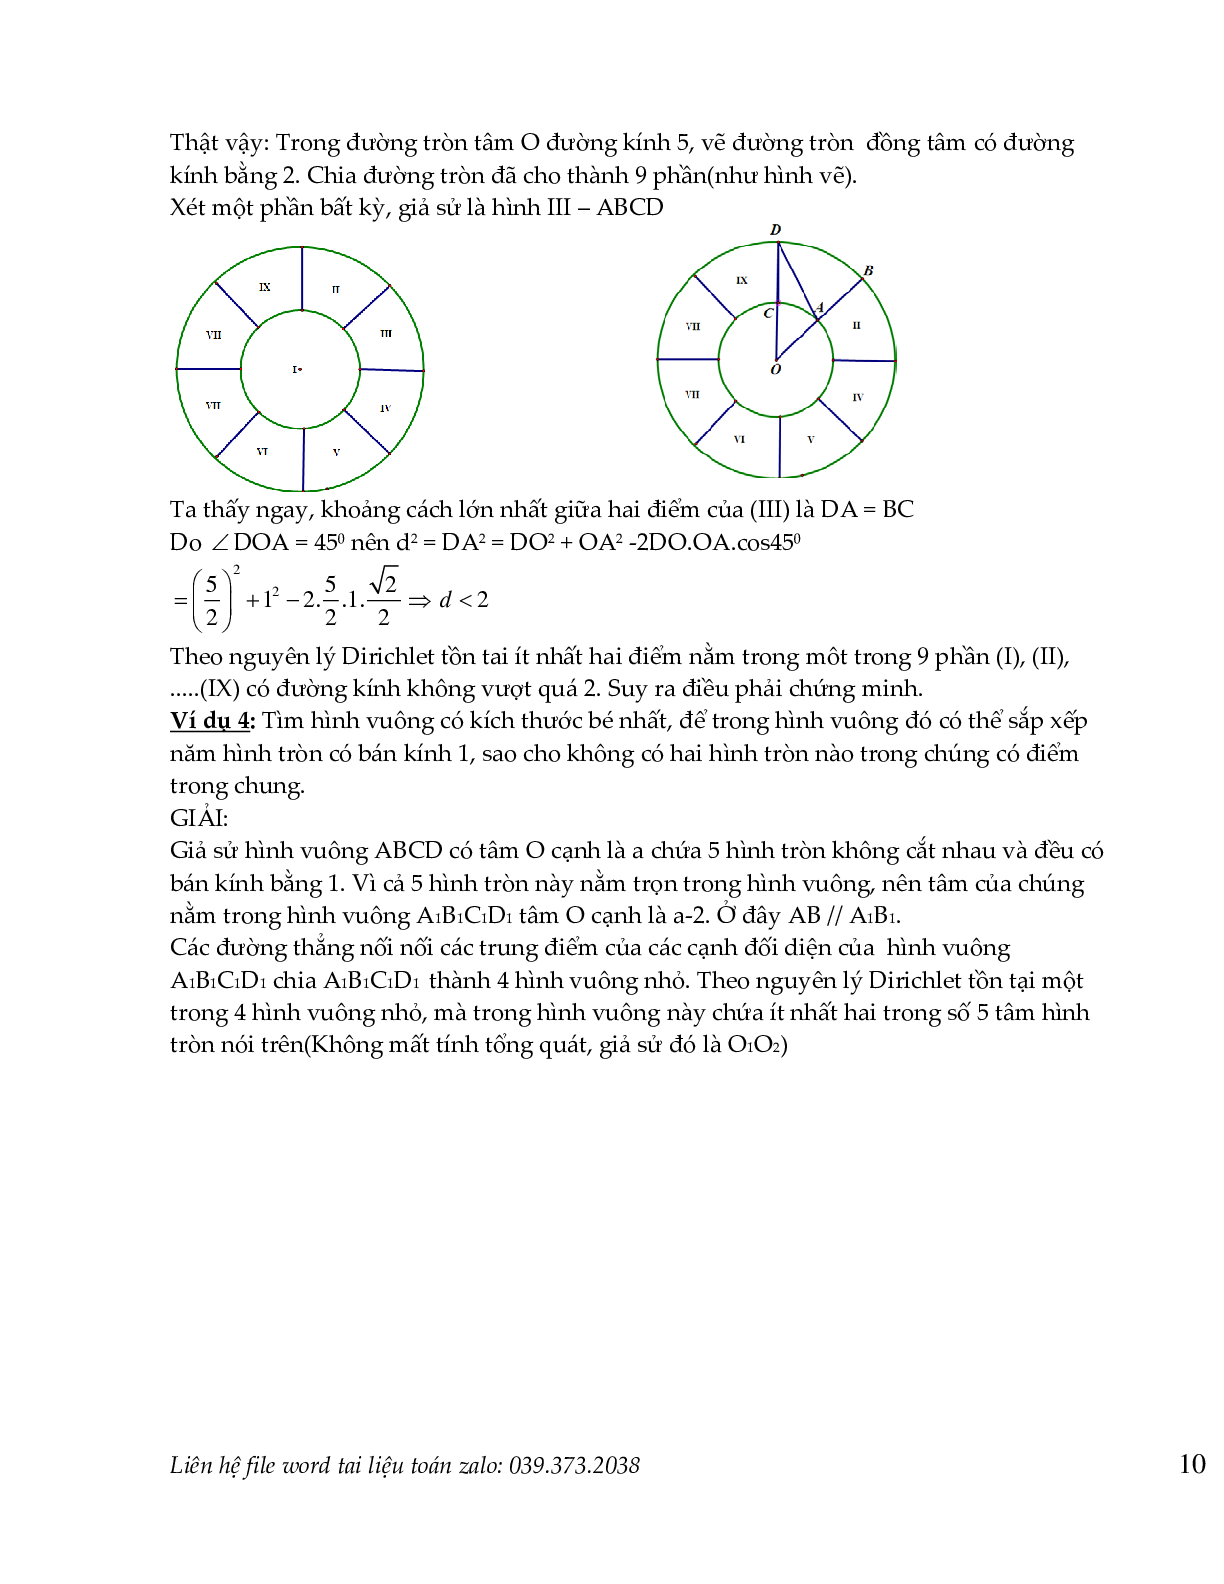 Nguyên lý dirichlet  và nguyên lý cực hạn trong toán tổ hợp (trang 9)